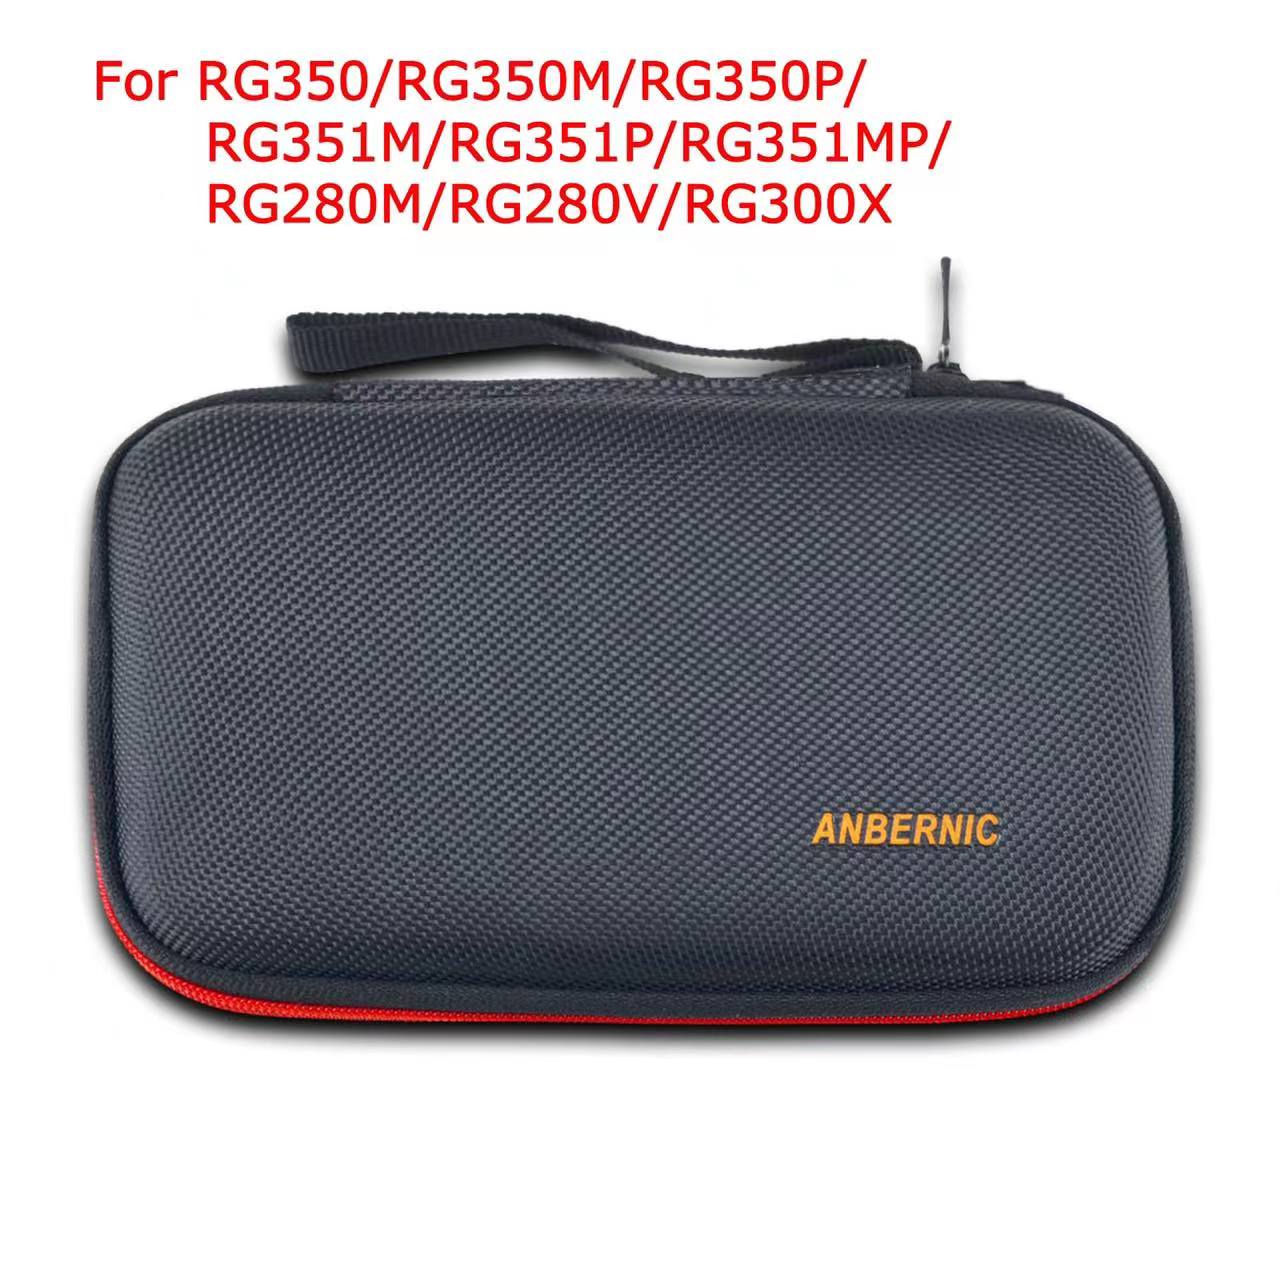 ANBERNIC RG350/RG350M/RG350P Schutztasche und Teile für Retro-Spielekonsole Game Player RG351P Handheld Retro-Spielekonsole Tasche und Teile werden aus China geliefert